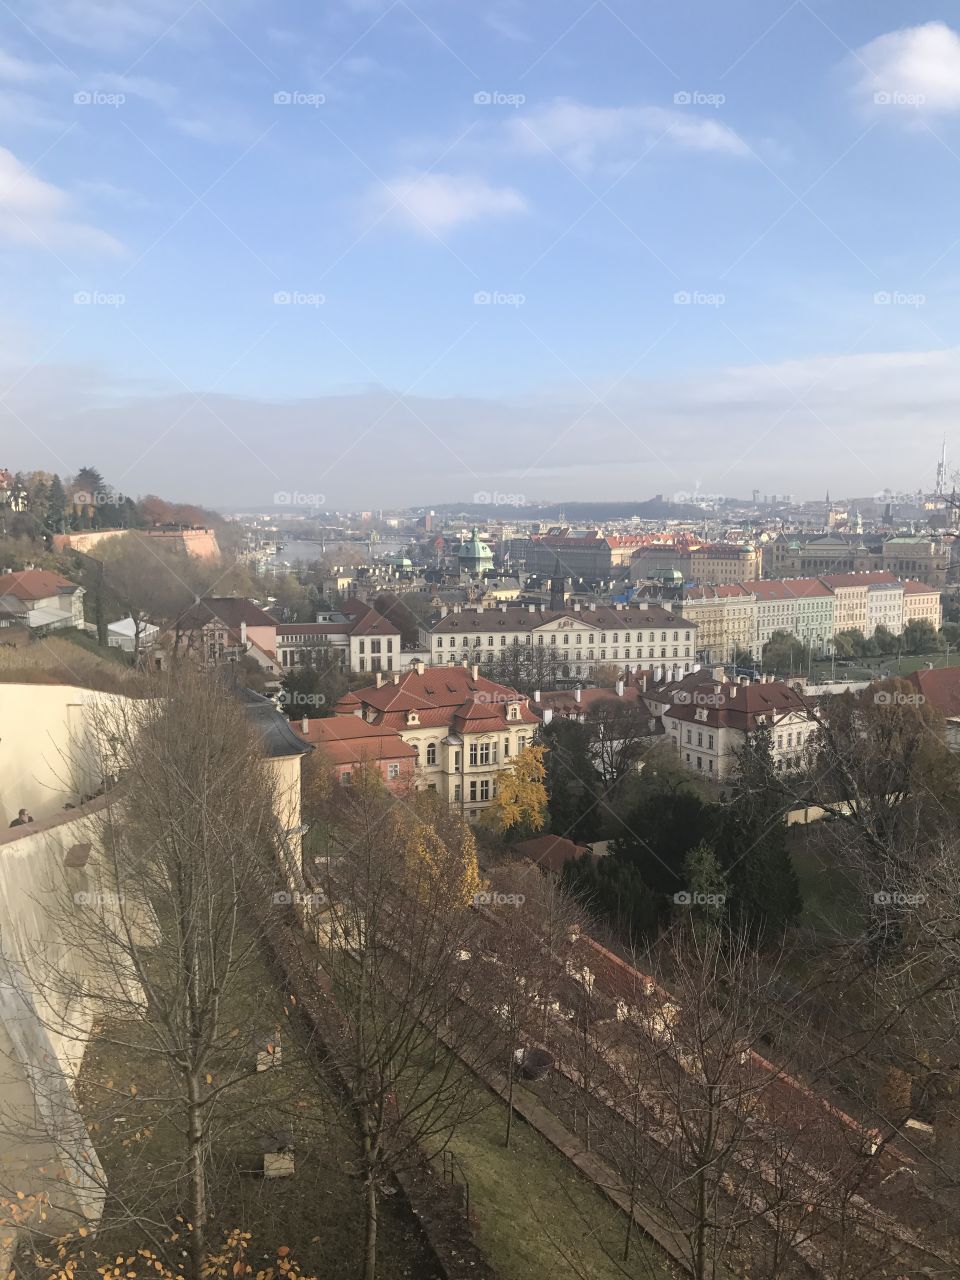 Amazon bag view of Praha city!